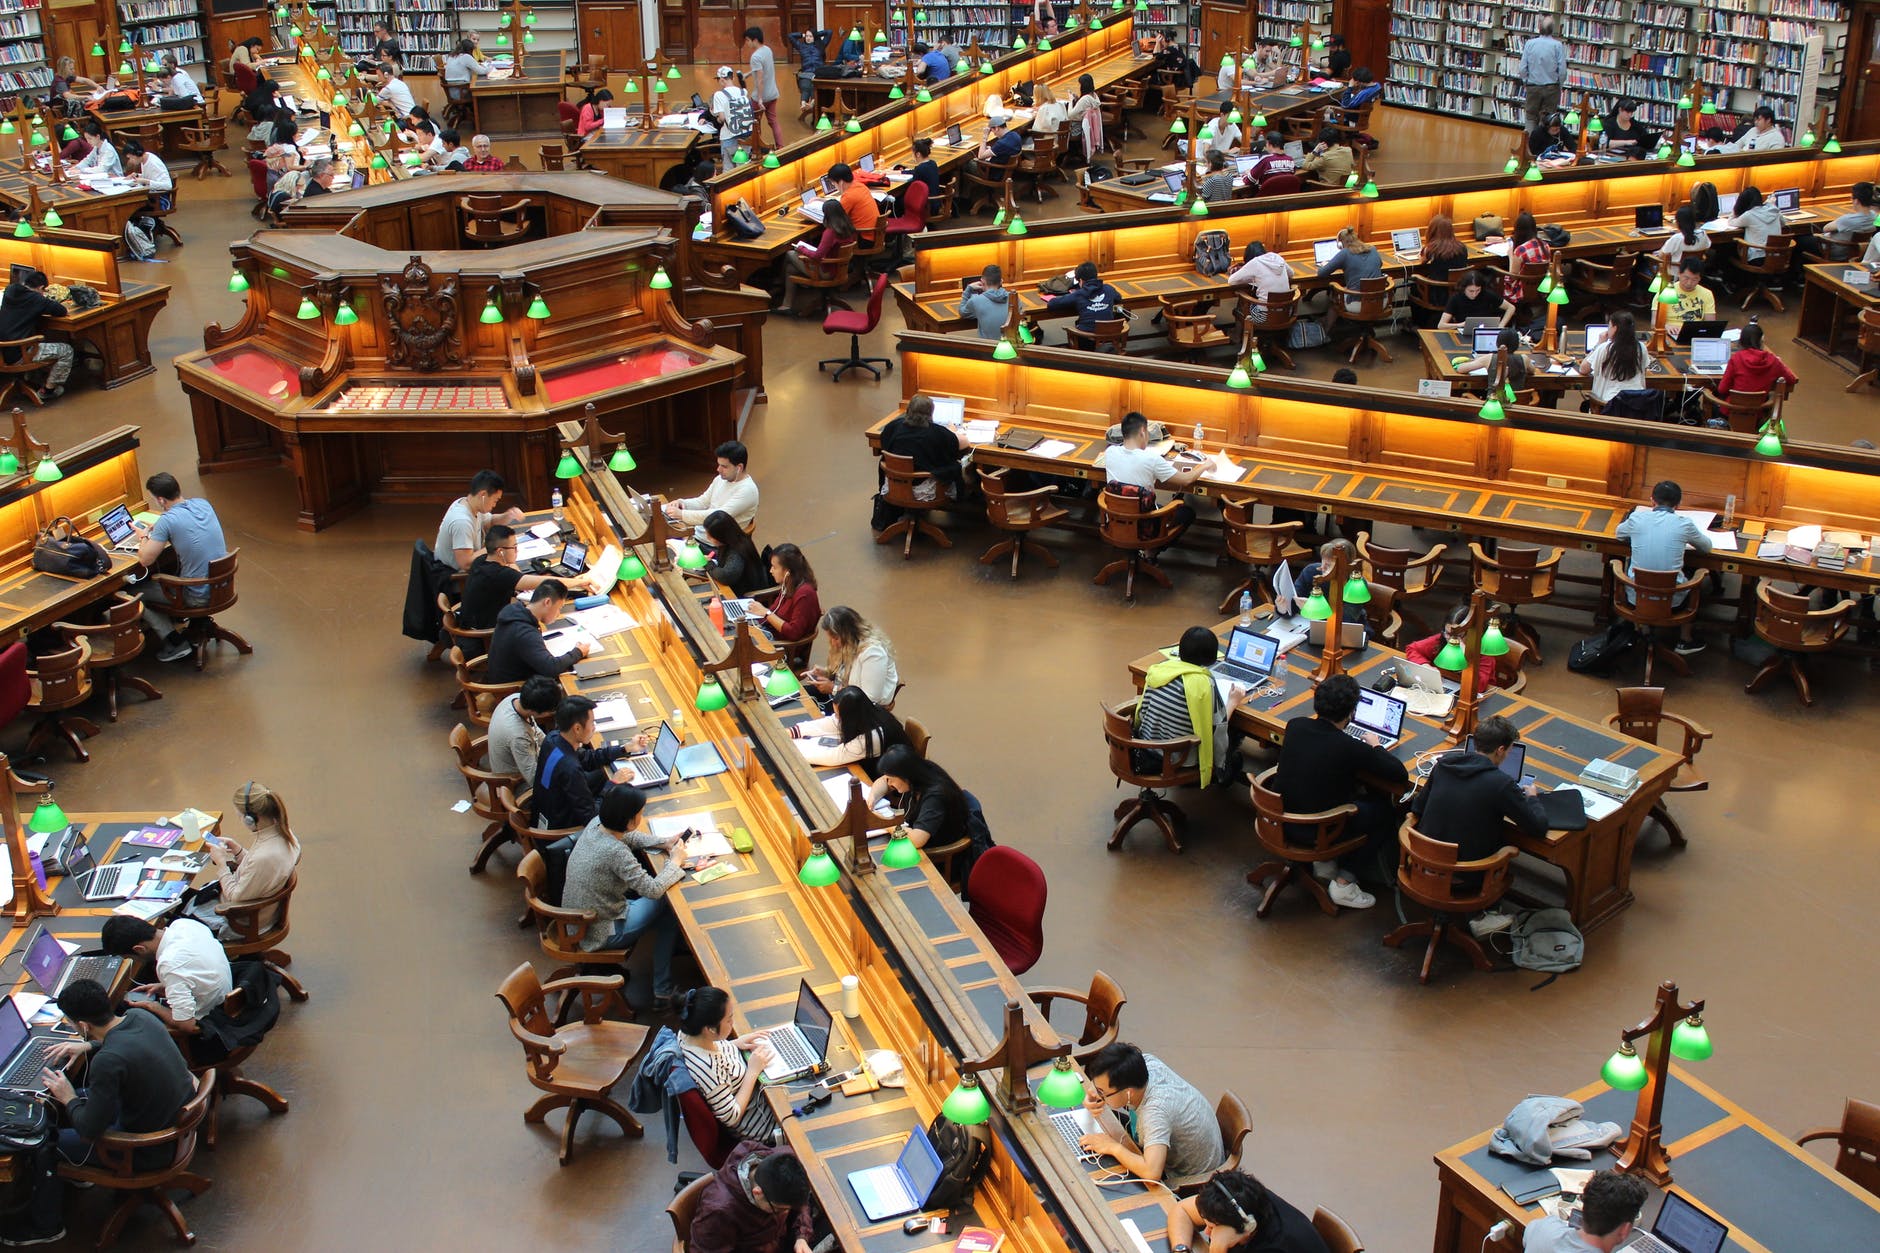 Una biblioteca enorme con varios estudiantes consultando o leyendo libros  